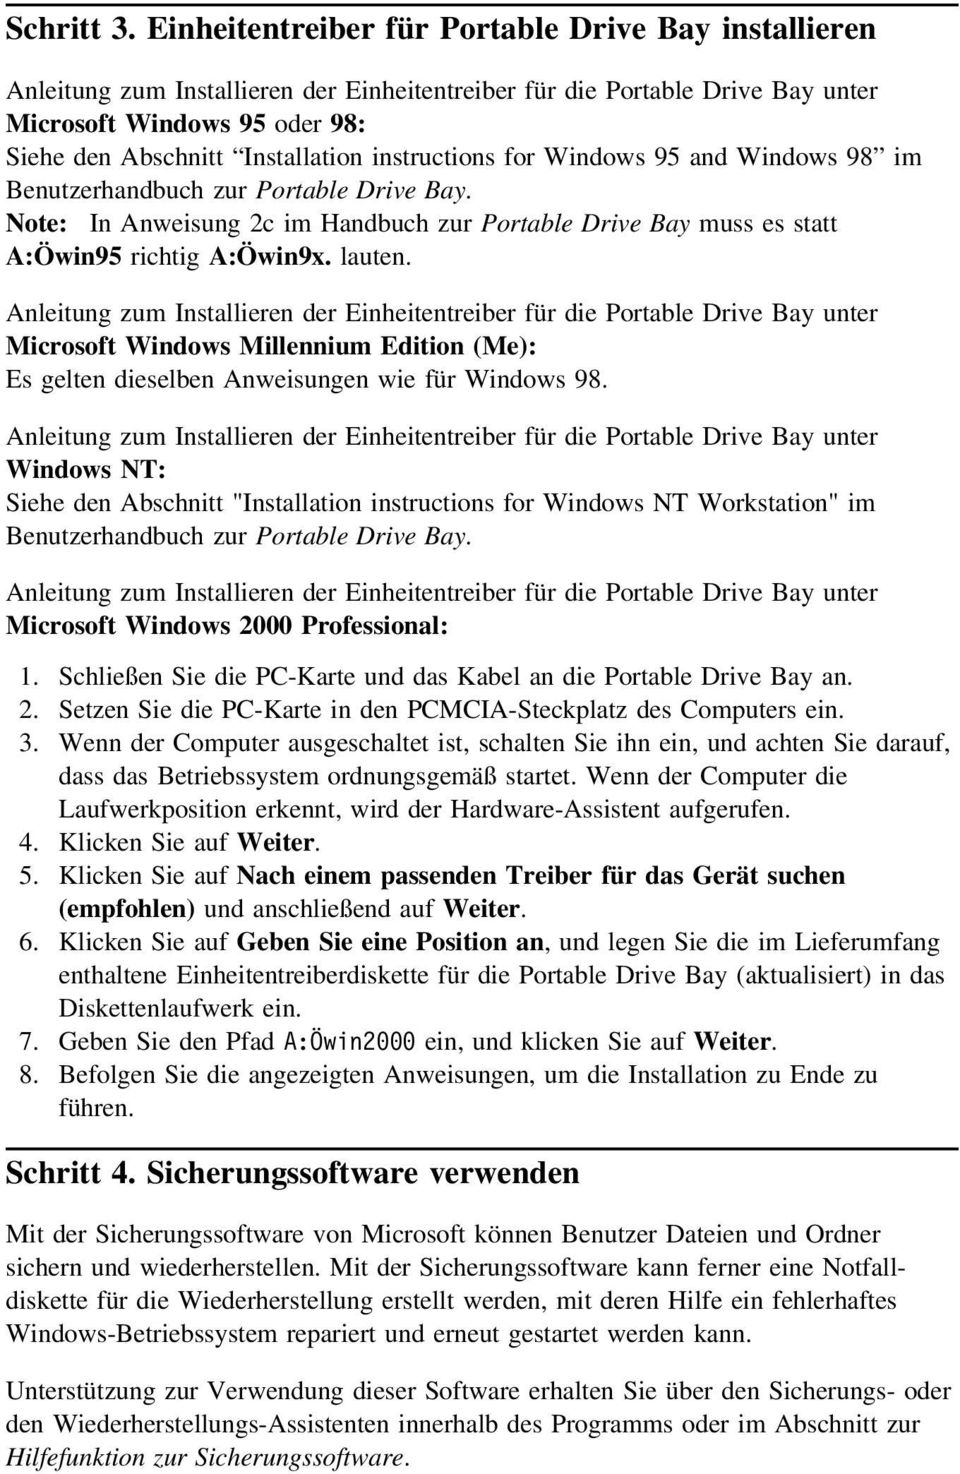 instructions for Windows 95 and Windows 98 im Benutzerhandbuch zur Portable Drive Bay. Note: In Anweisung 2c im Handbuch zur Portable Drive Bay muss es statt A:Öwin95 richtig A:Öwin9x. lauten.